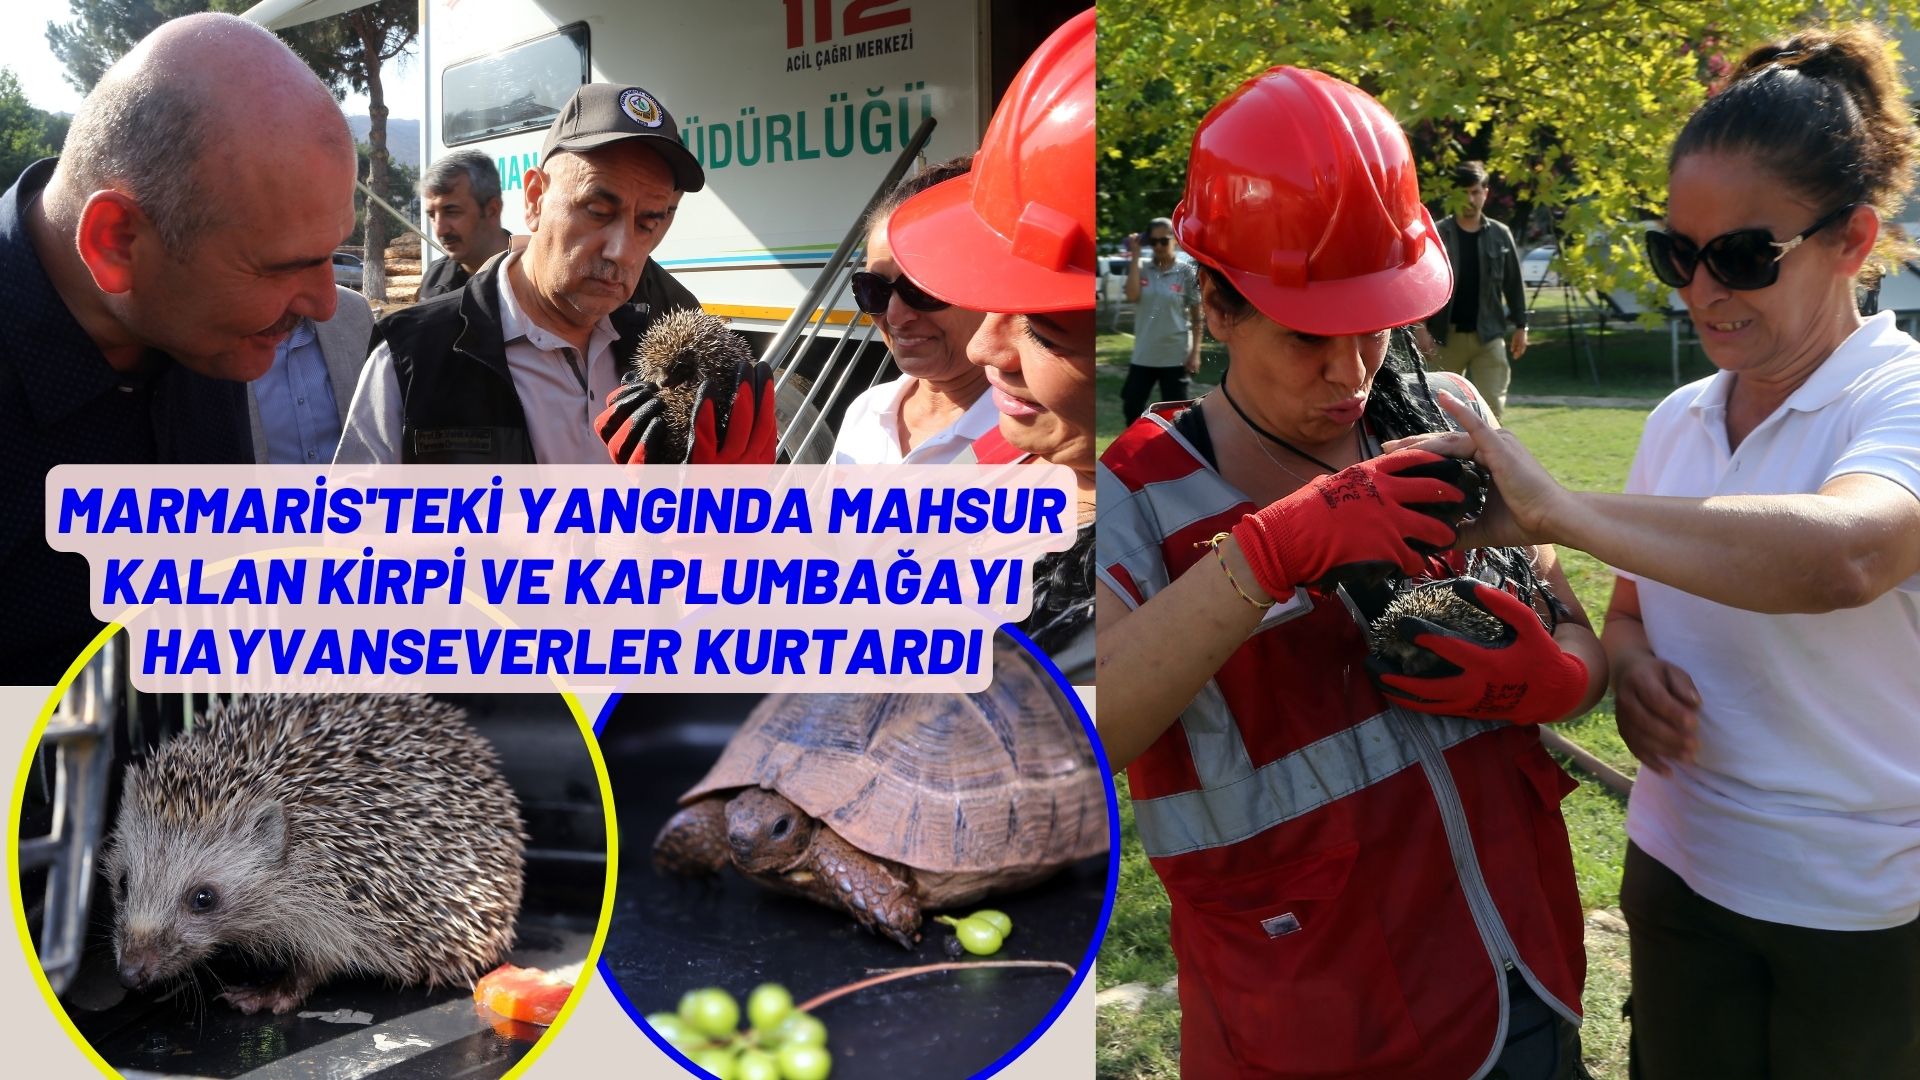 Marmaris’teki yangında mahsur kalan kirpi ve kaplumbağayı hayvanseverler kurtardı